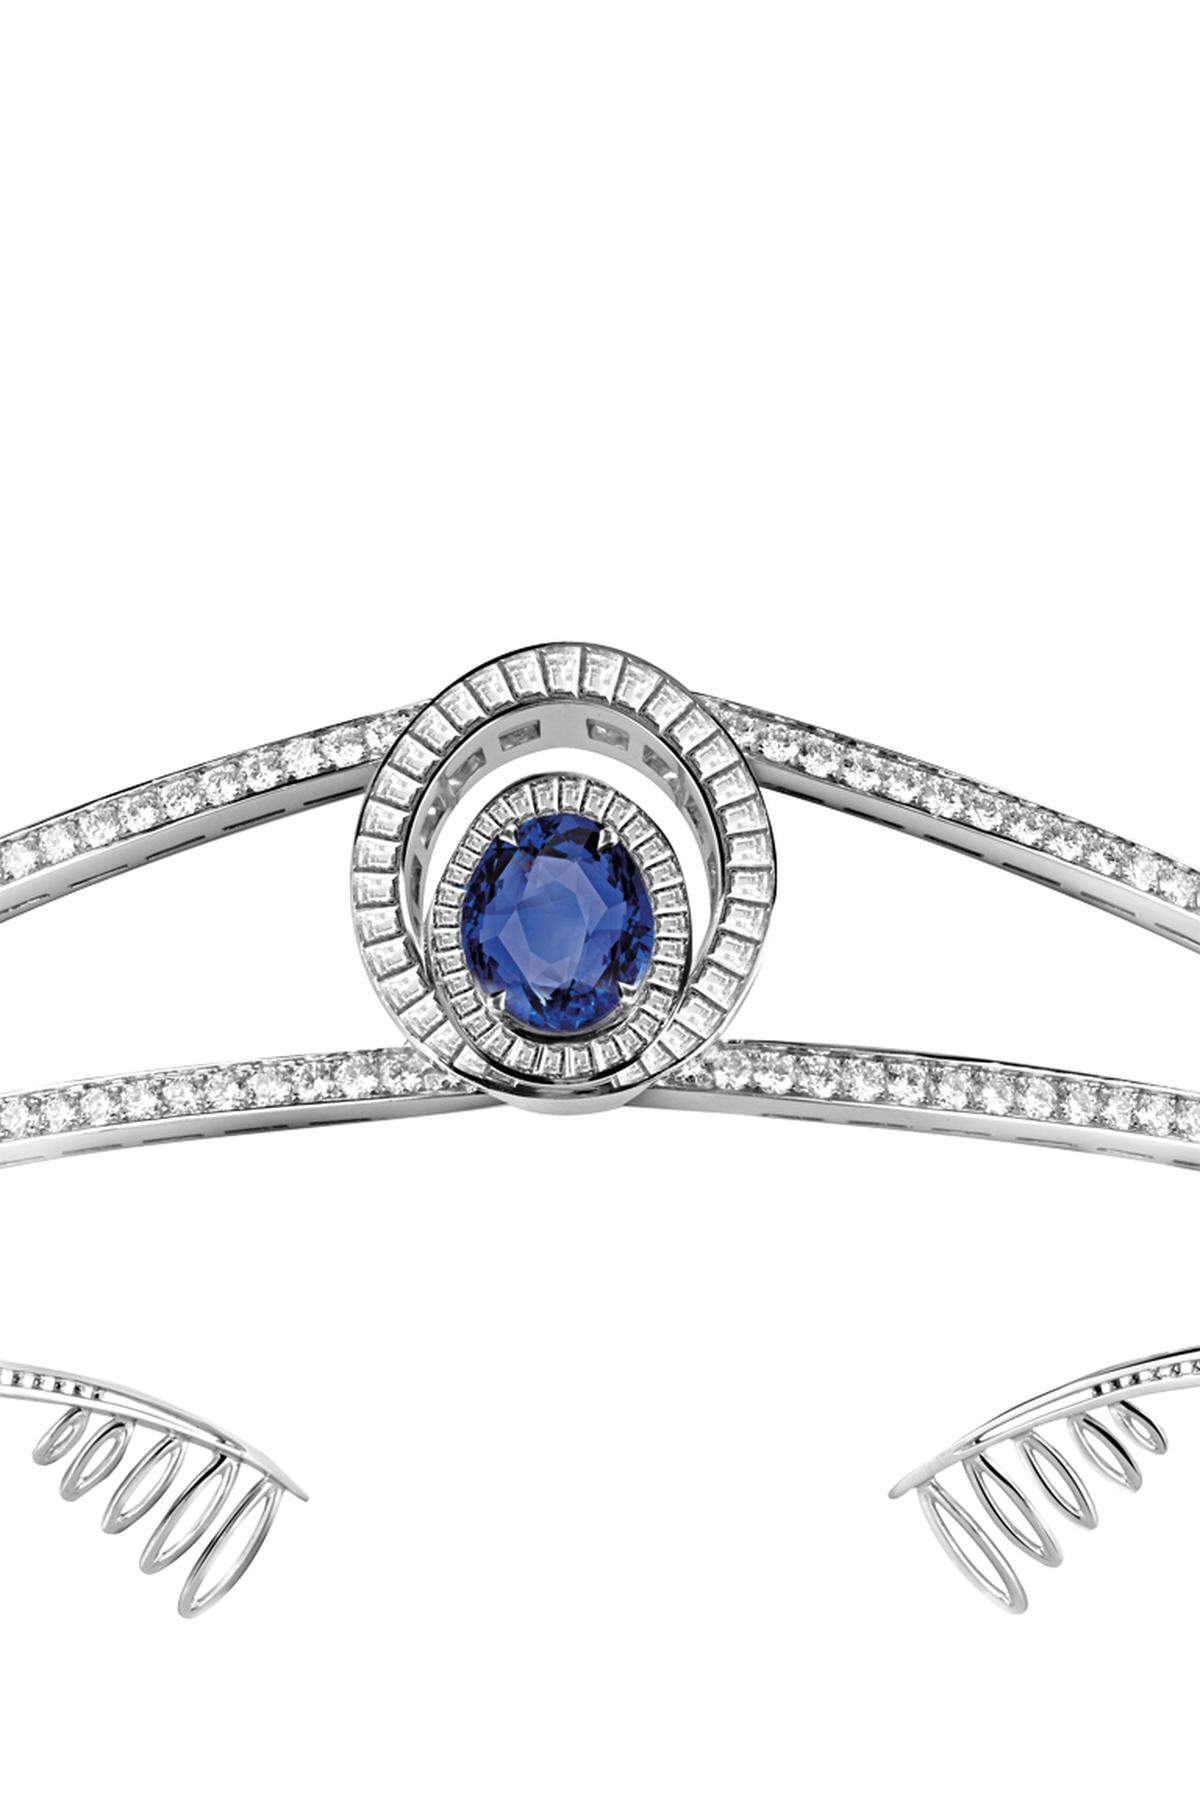 „Reine de Naples“ aus Platin 950, mit Brillanten, 12,75 ct., Diamanten im Baguetteschliff, etwa 8,00 ct., und einem ovalen blauen Saphir, 8,37 ct.